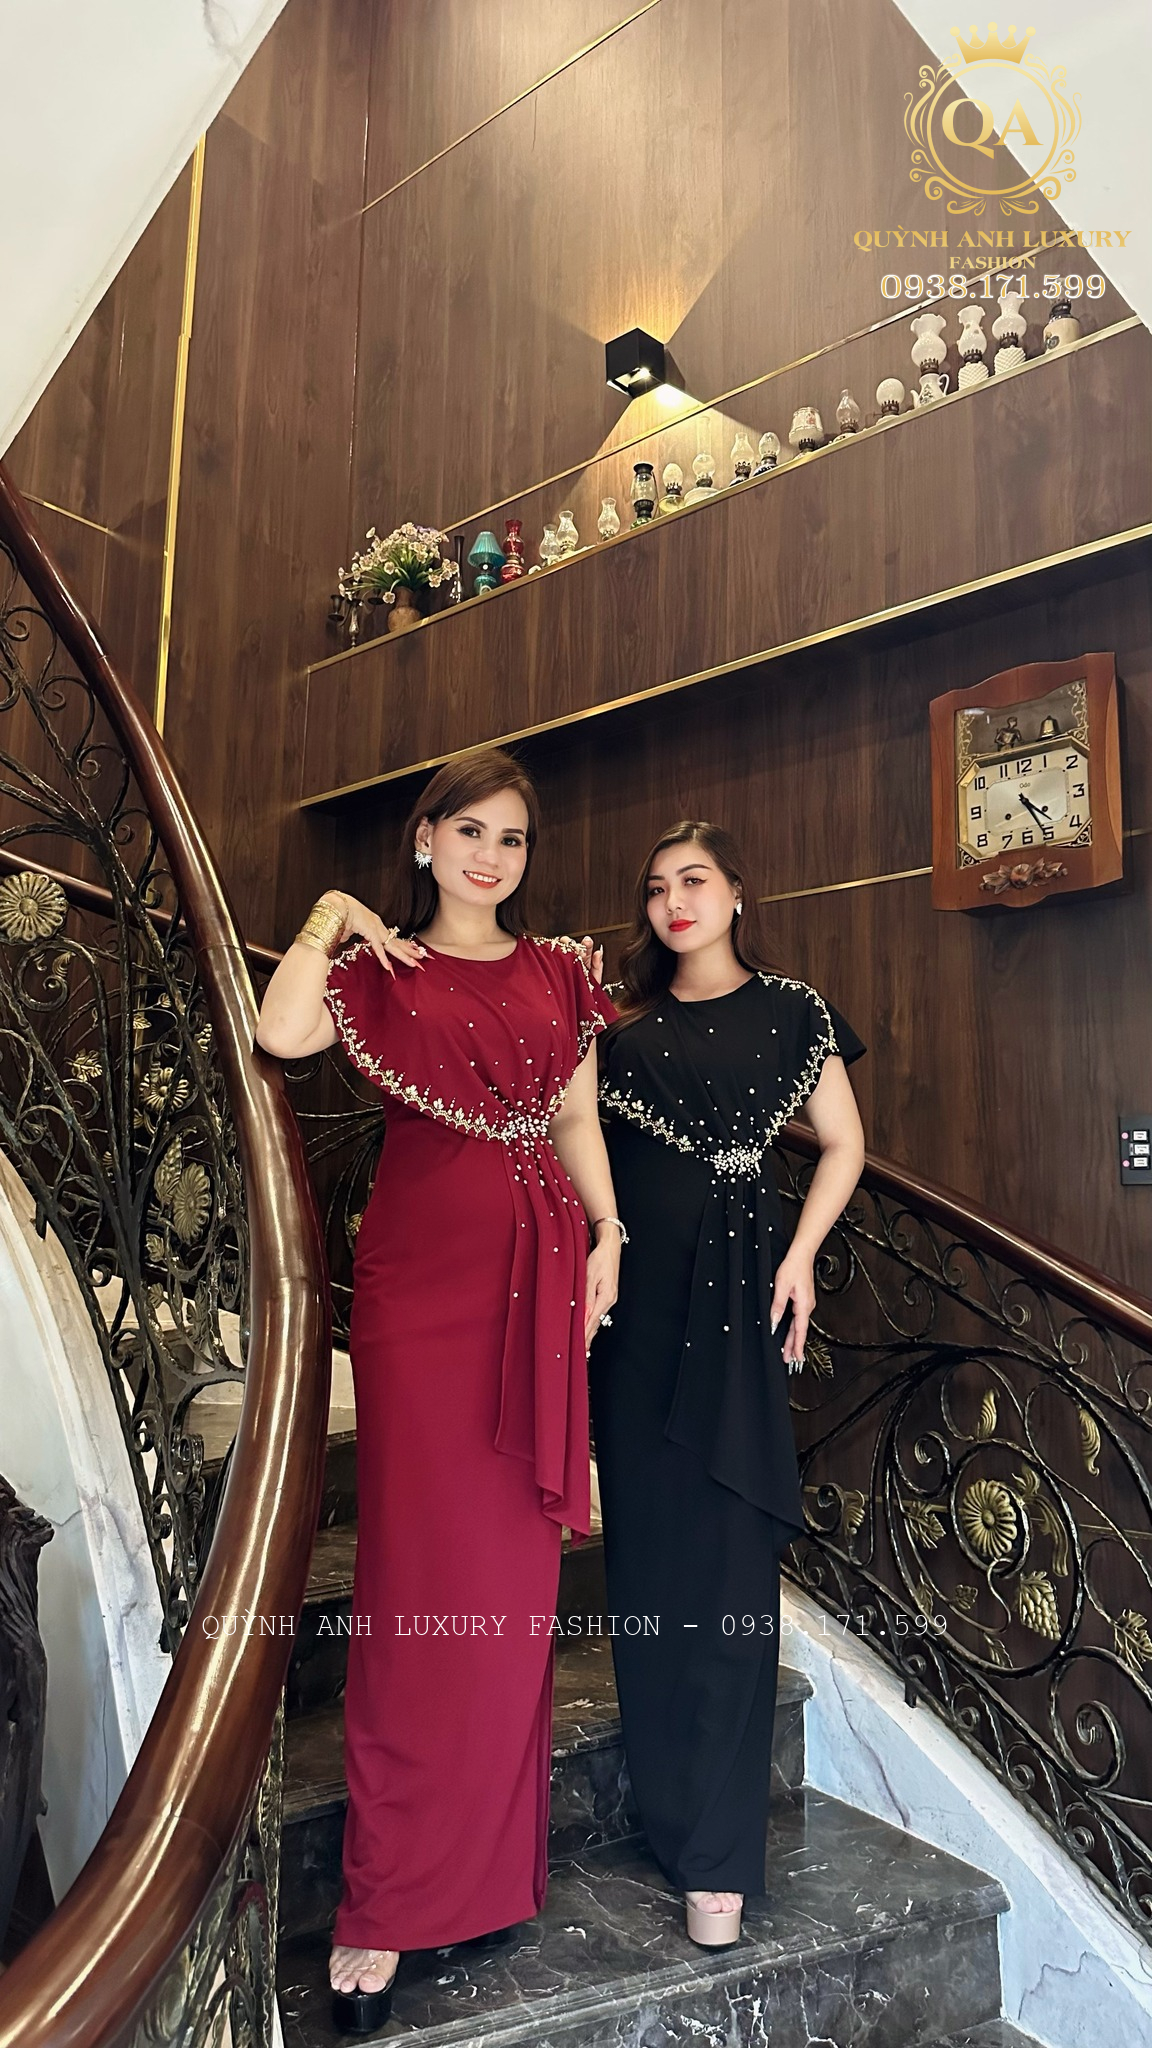 Top 3 mẫu đầm dạ hội trung niên đẹp và mới nhất của nhà Quỳnh Anh Luxury